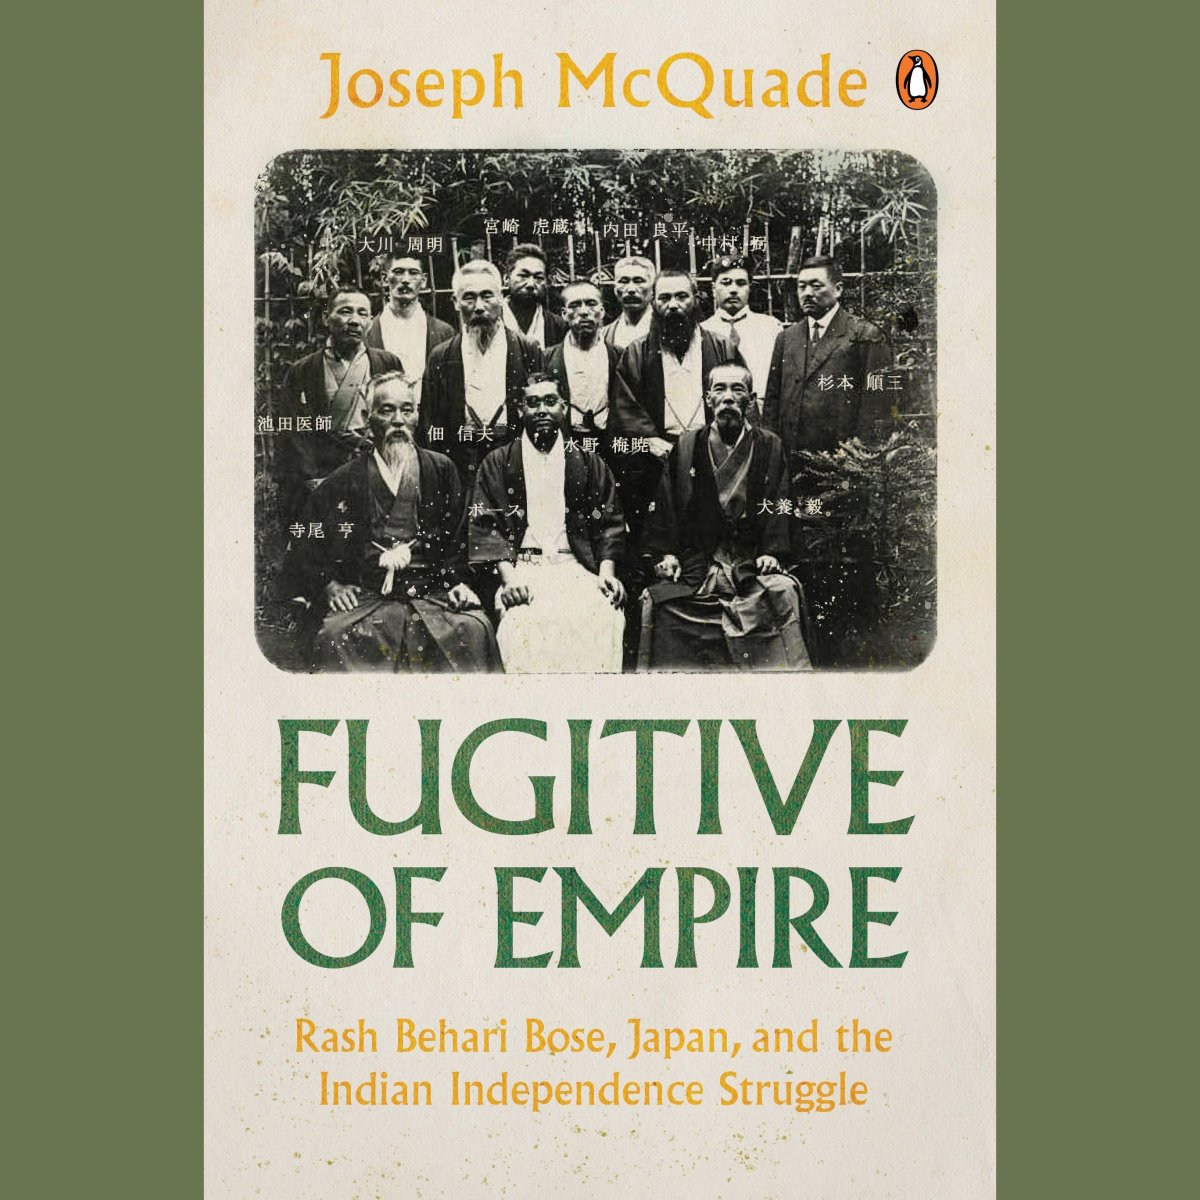 Book Excerpt: Fugitive of Empire